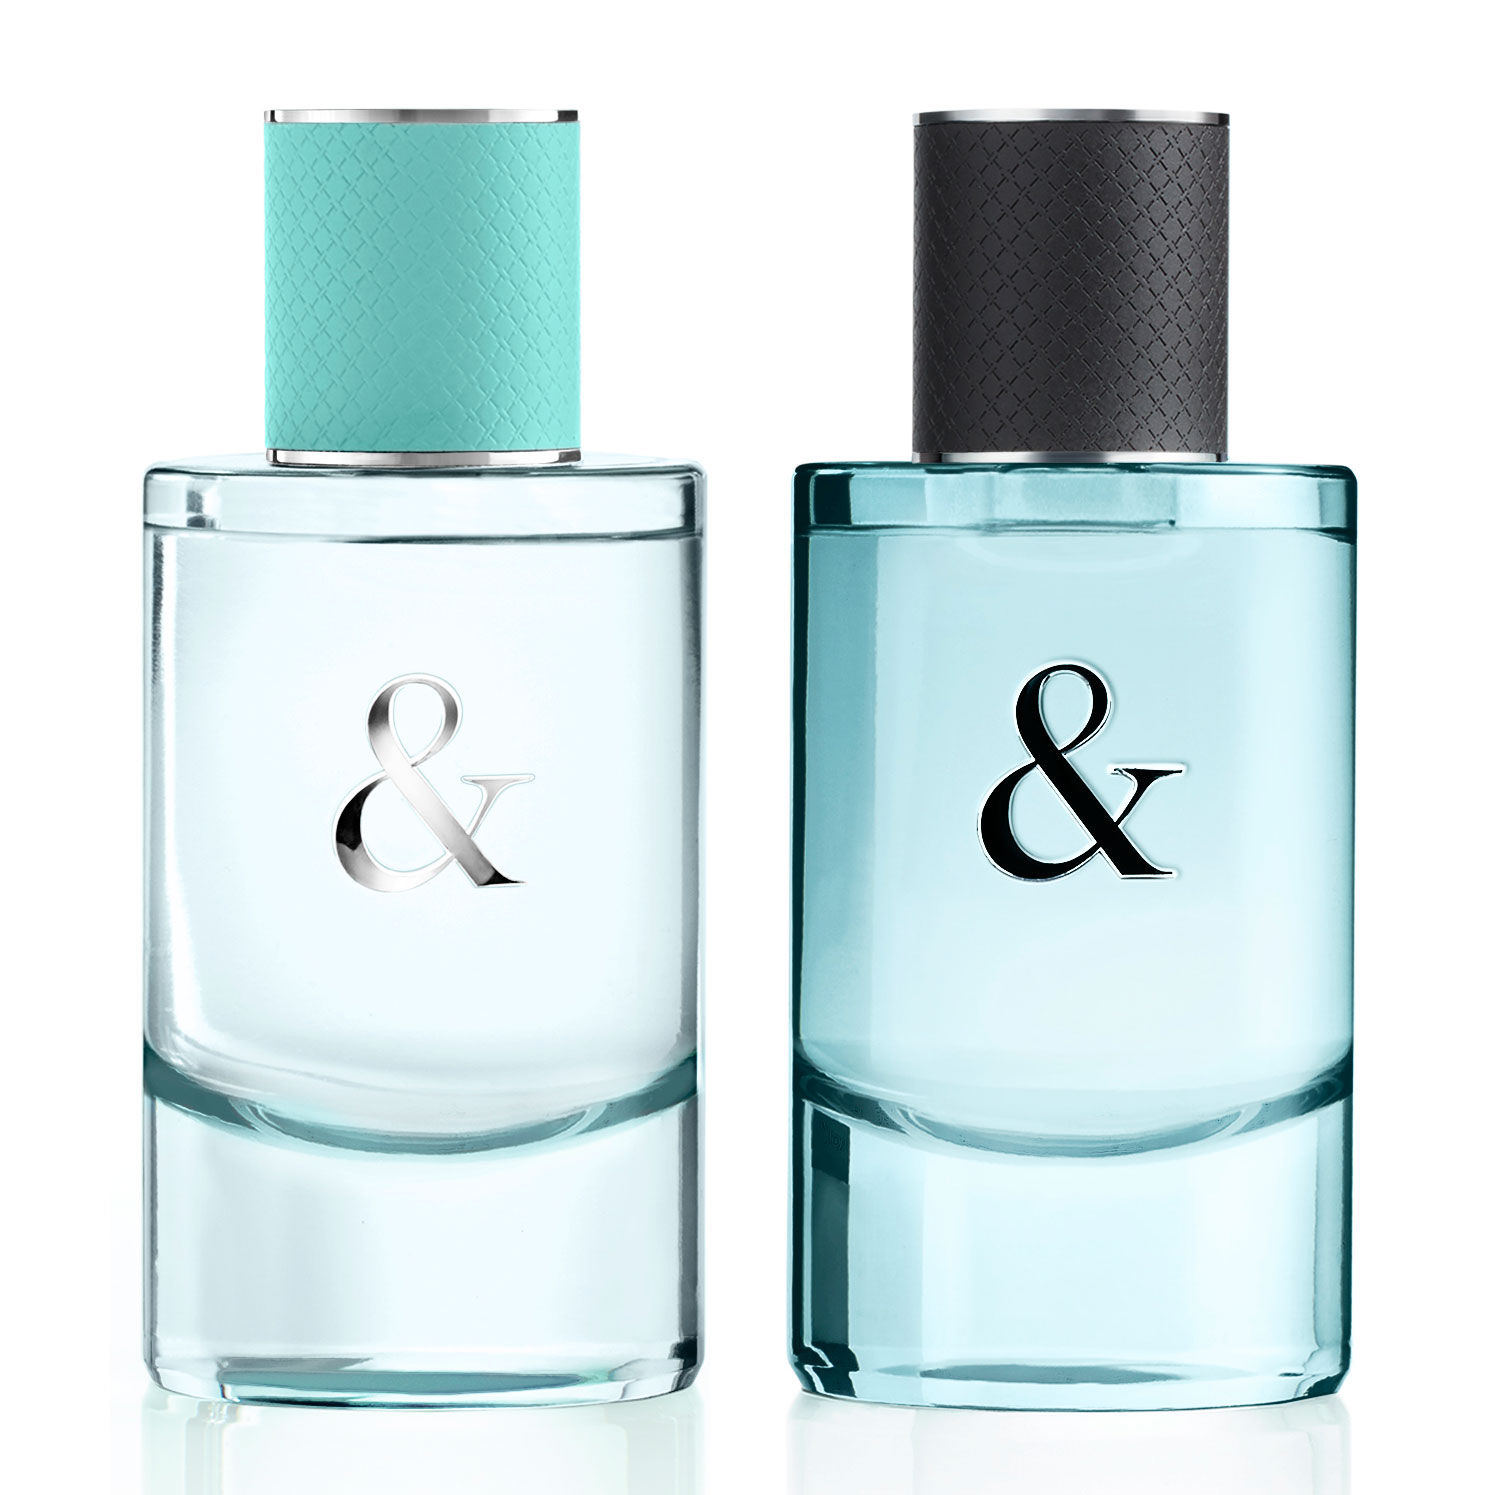 armani his and hers perfume